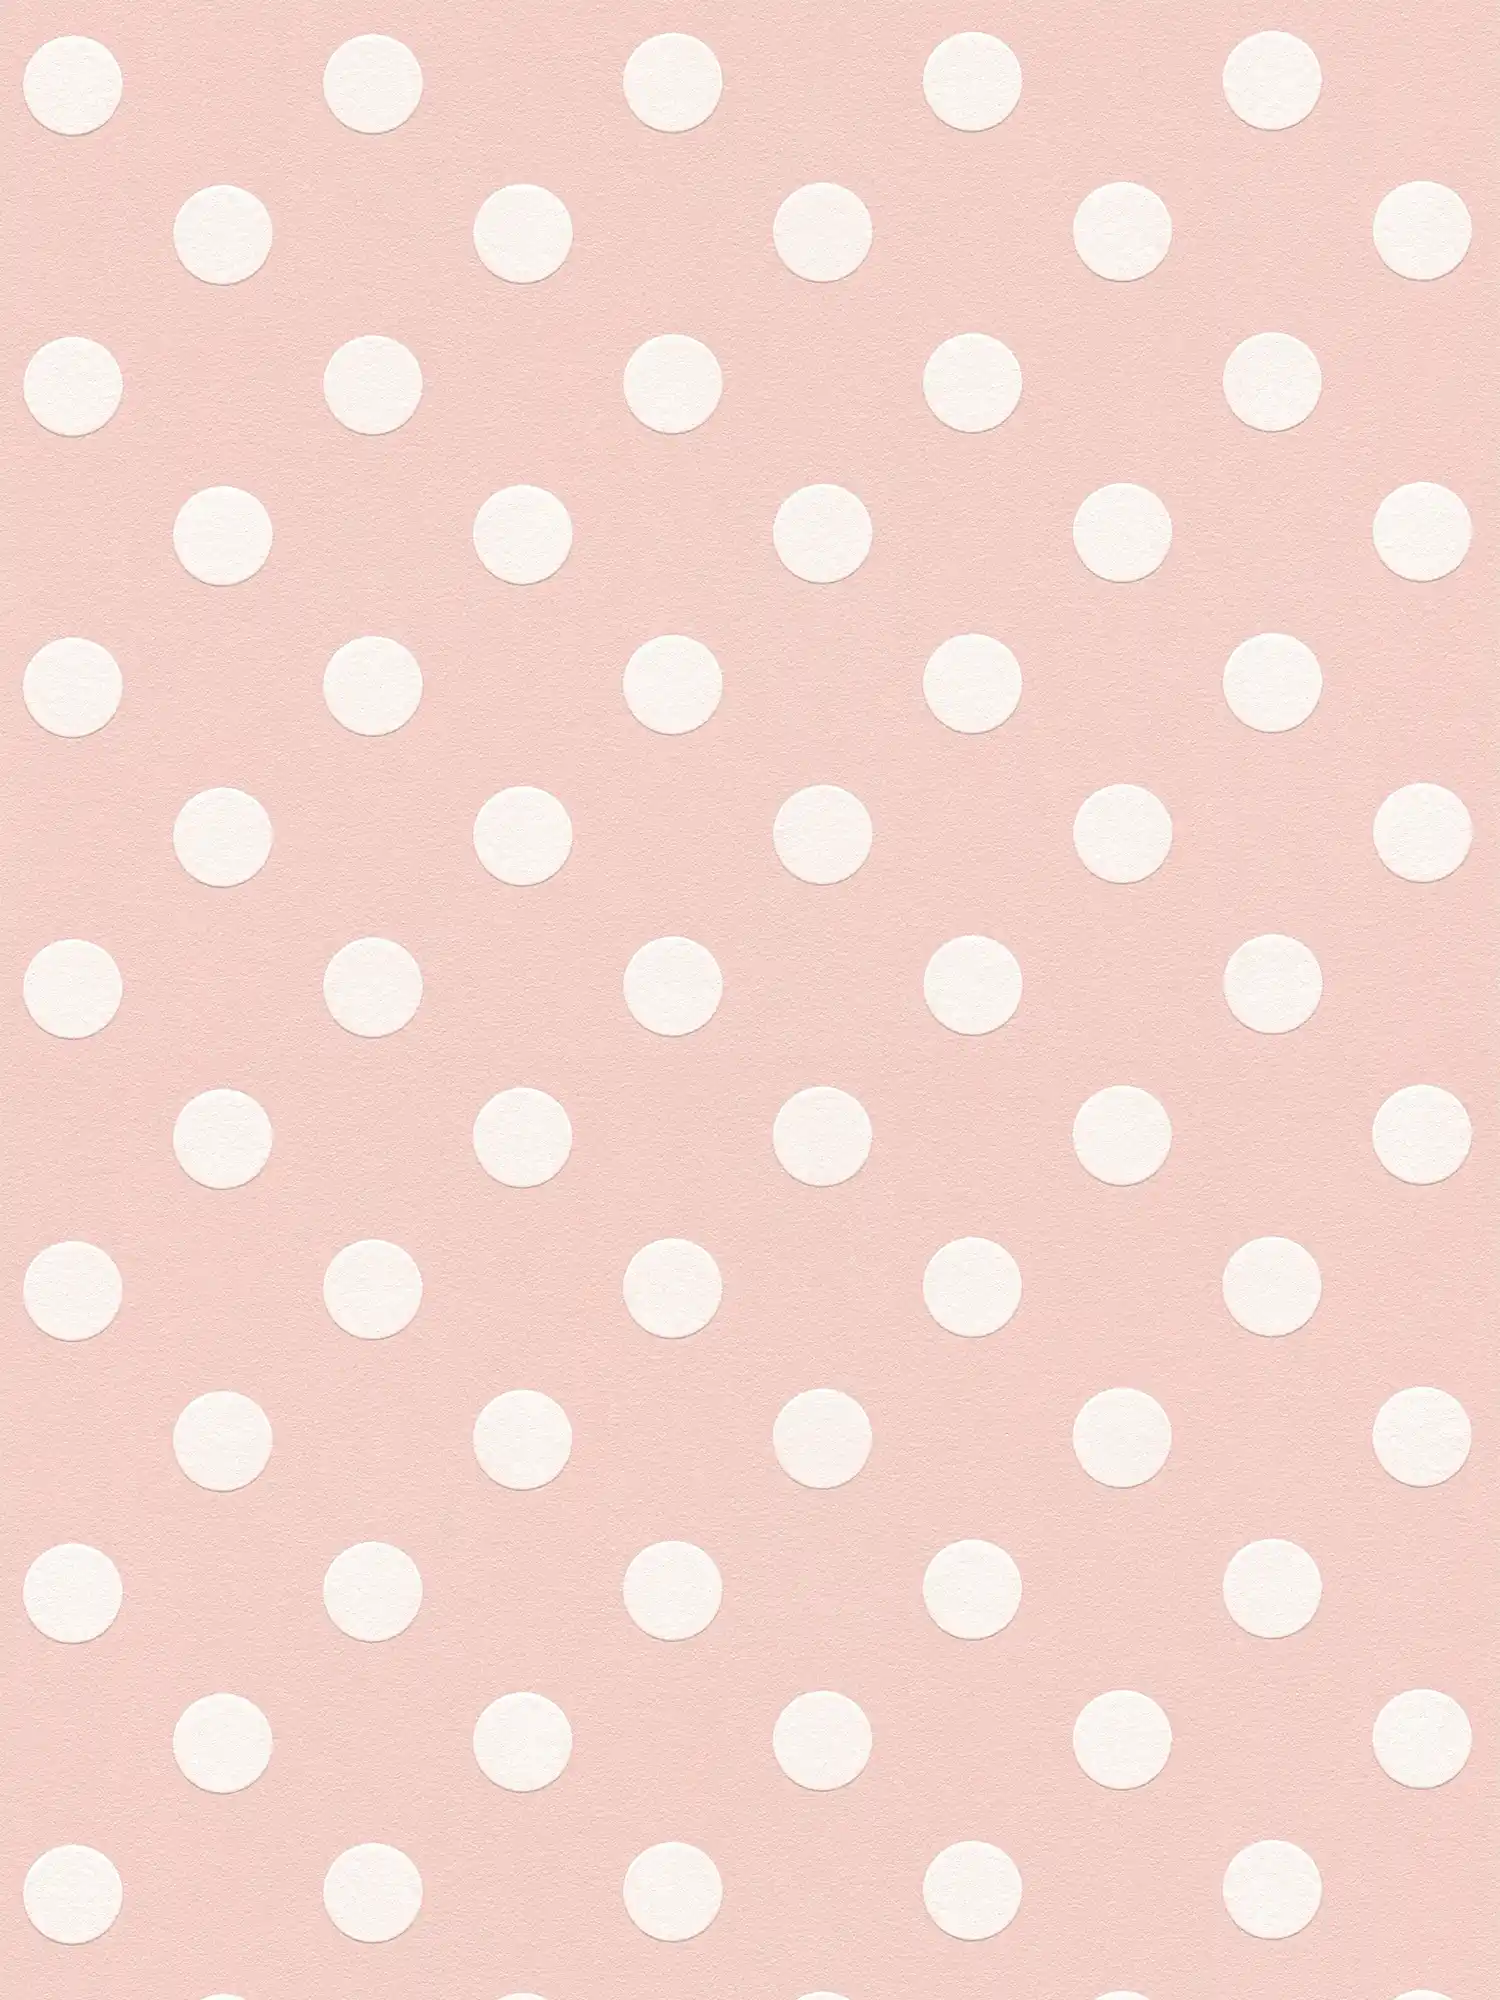         Rosa Punkte Tapete, Polka Dots für Mädchenzimmer – Rosa, Weiß
    